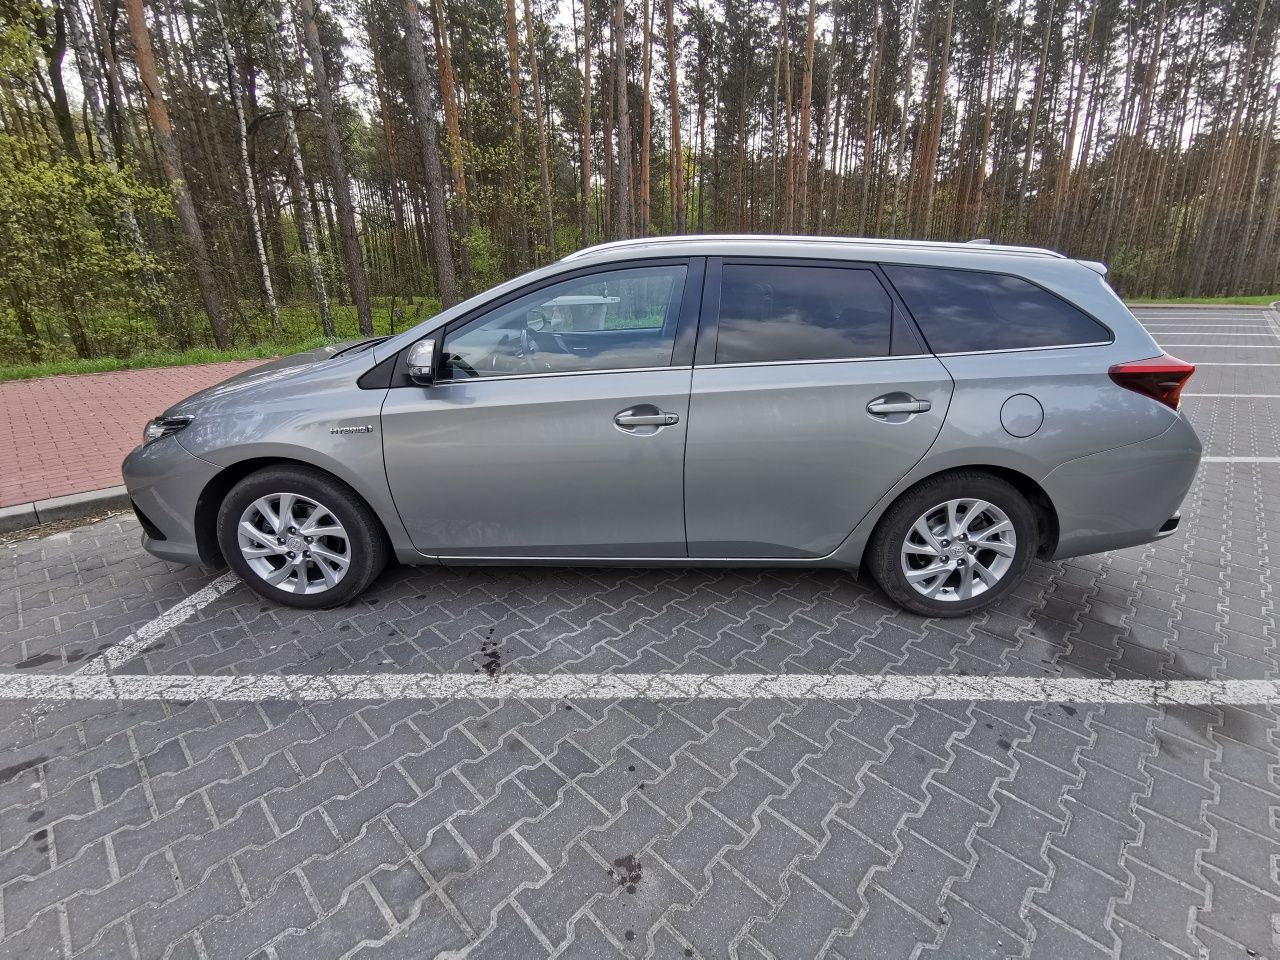 Toyota Auris 1.8 hybryda kombi 2016r zarejestrowany w Polsce .